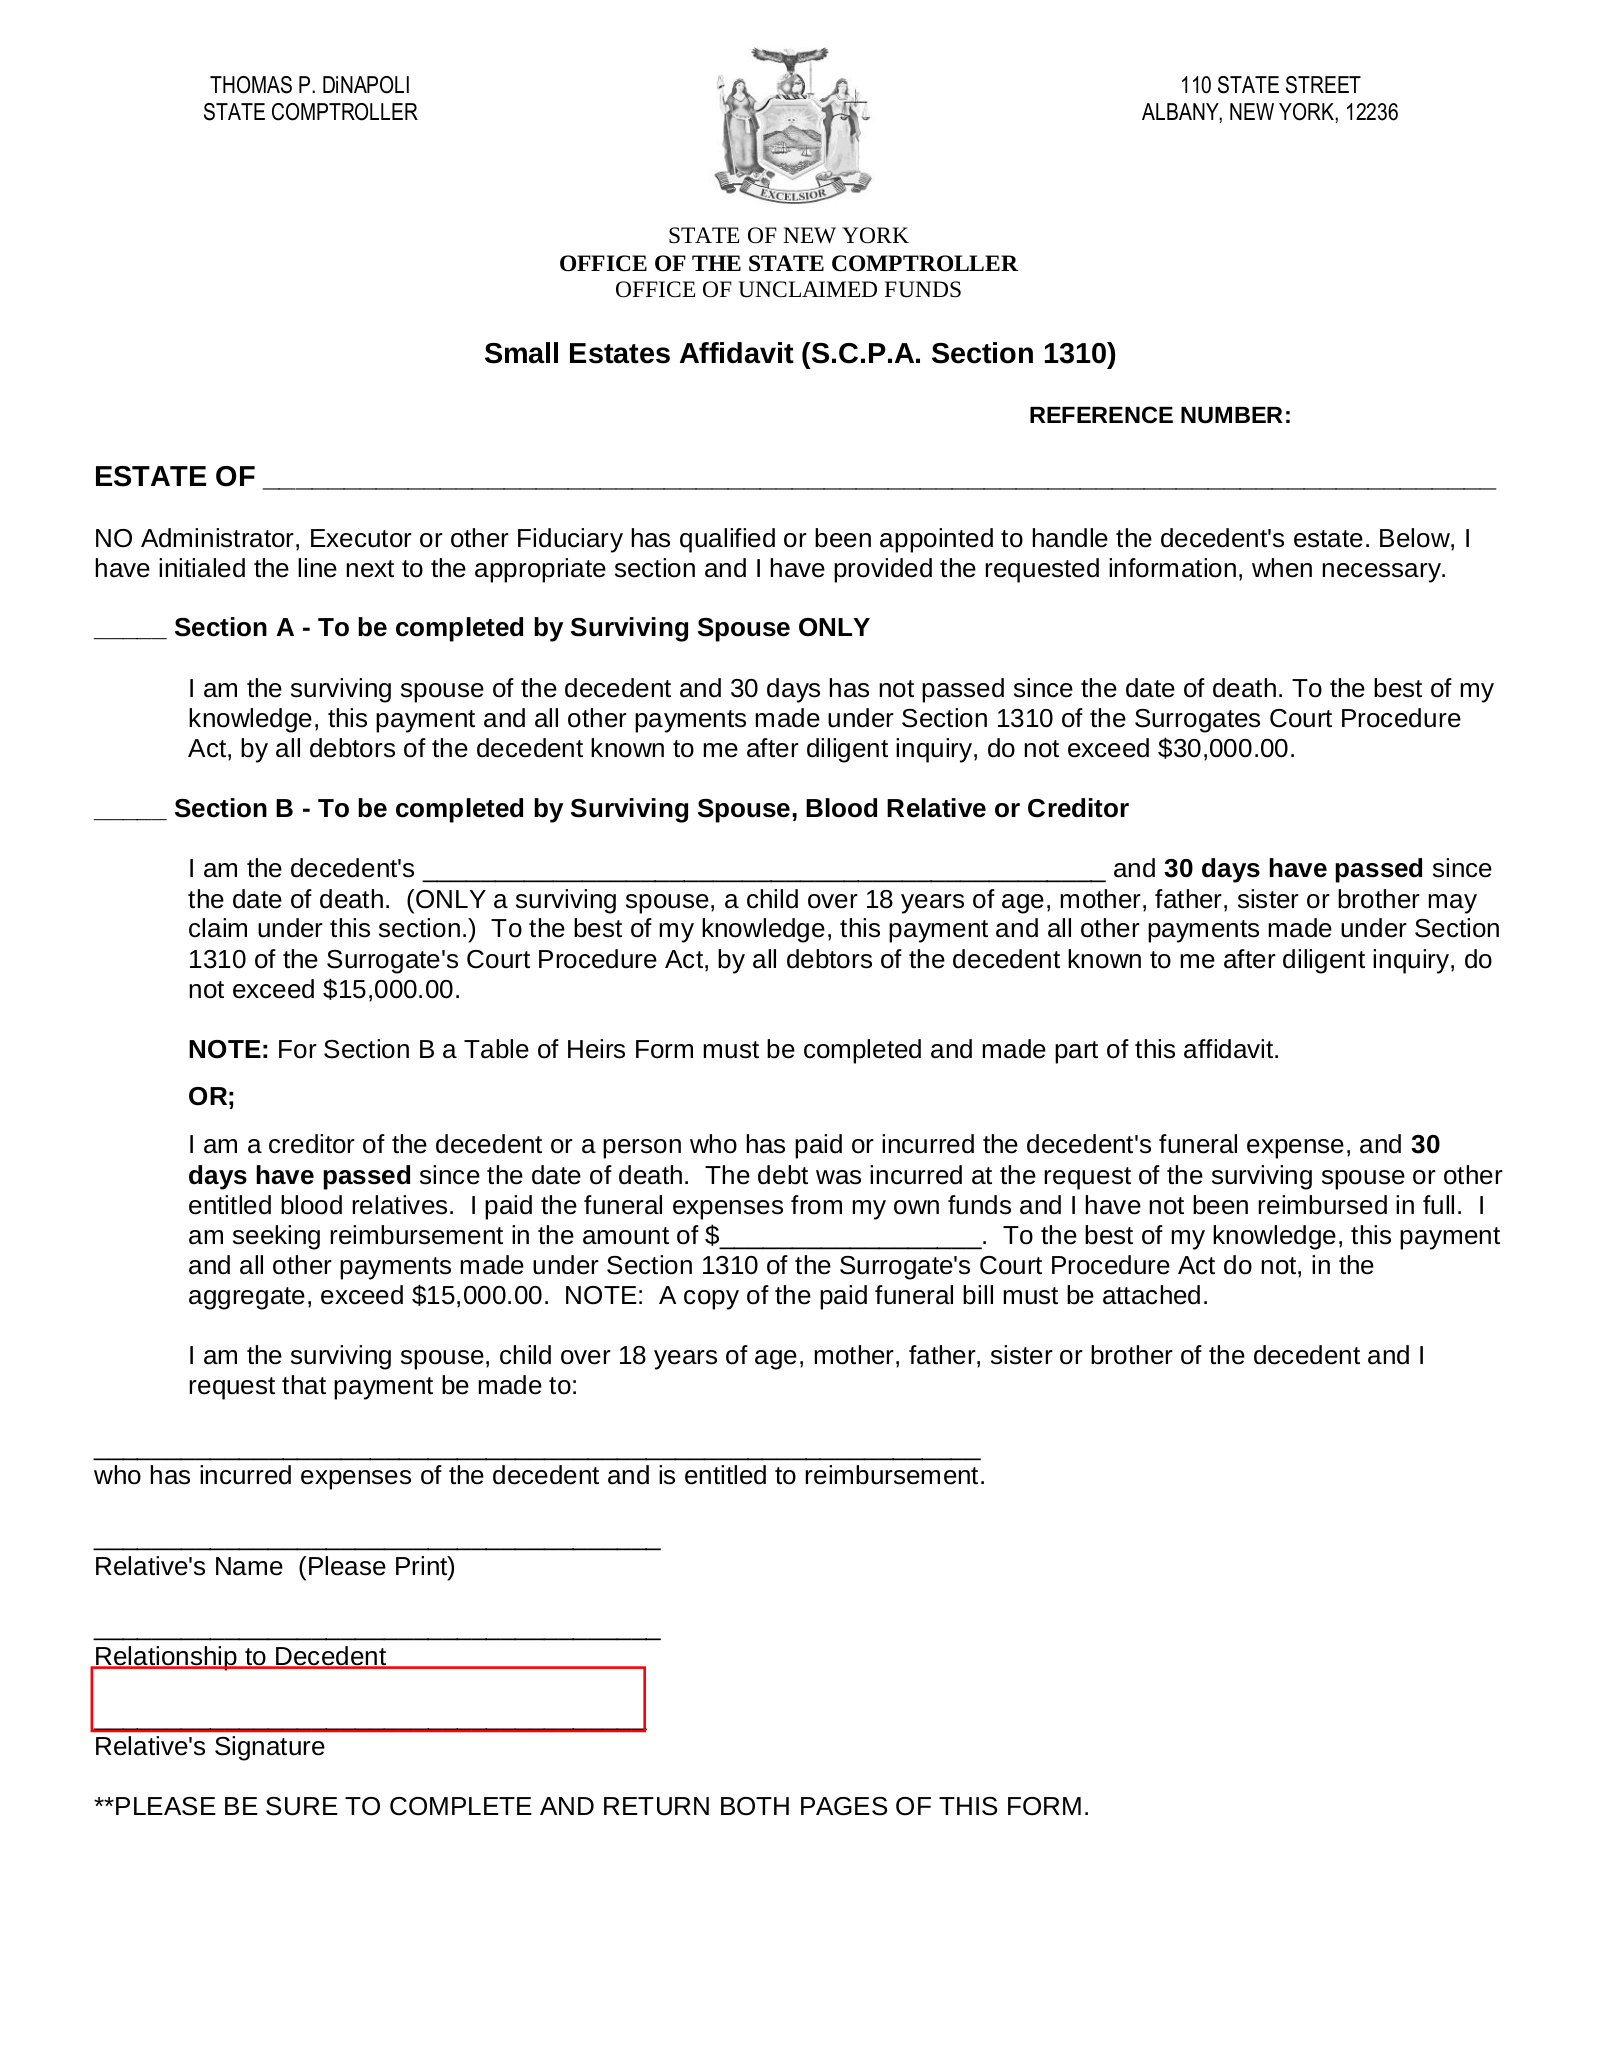 New York Small Estate Affidavit | Affidavit of Voluntary Administration